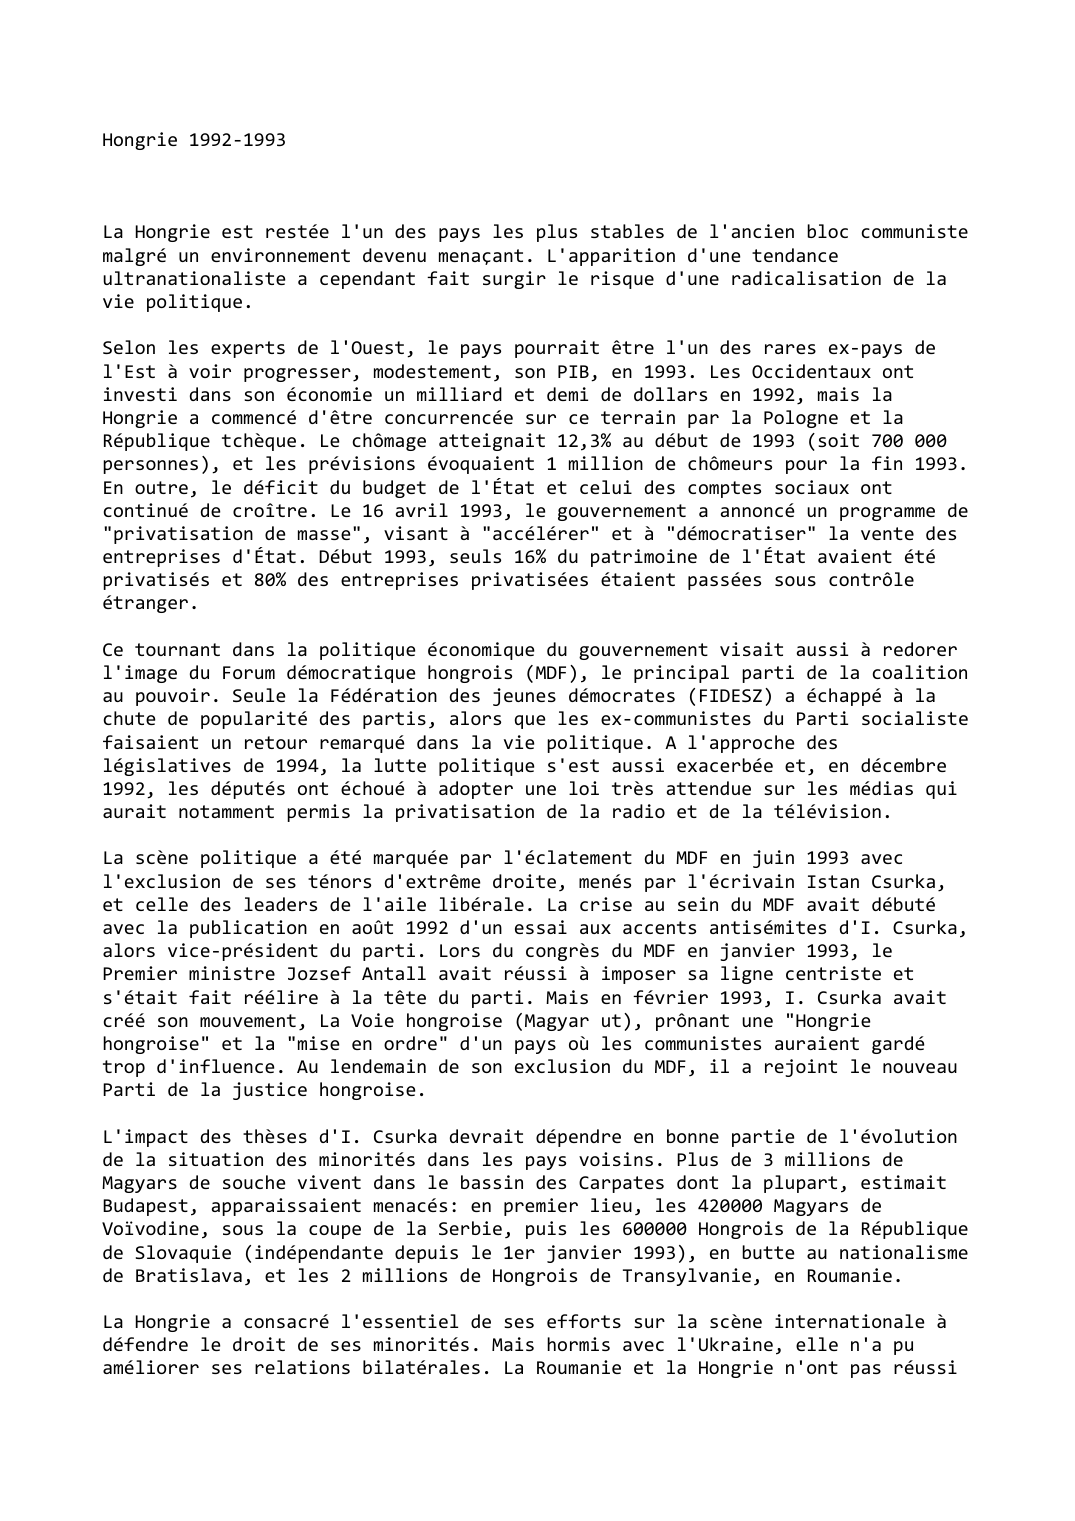 Prévisualisation du document Hongrie (1992-1993)